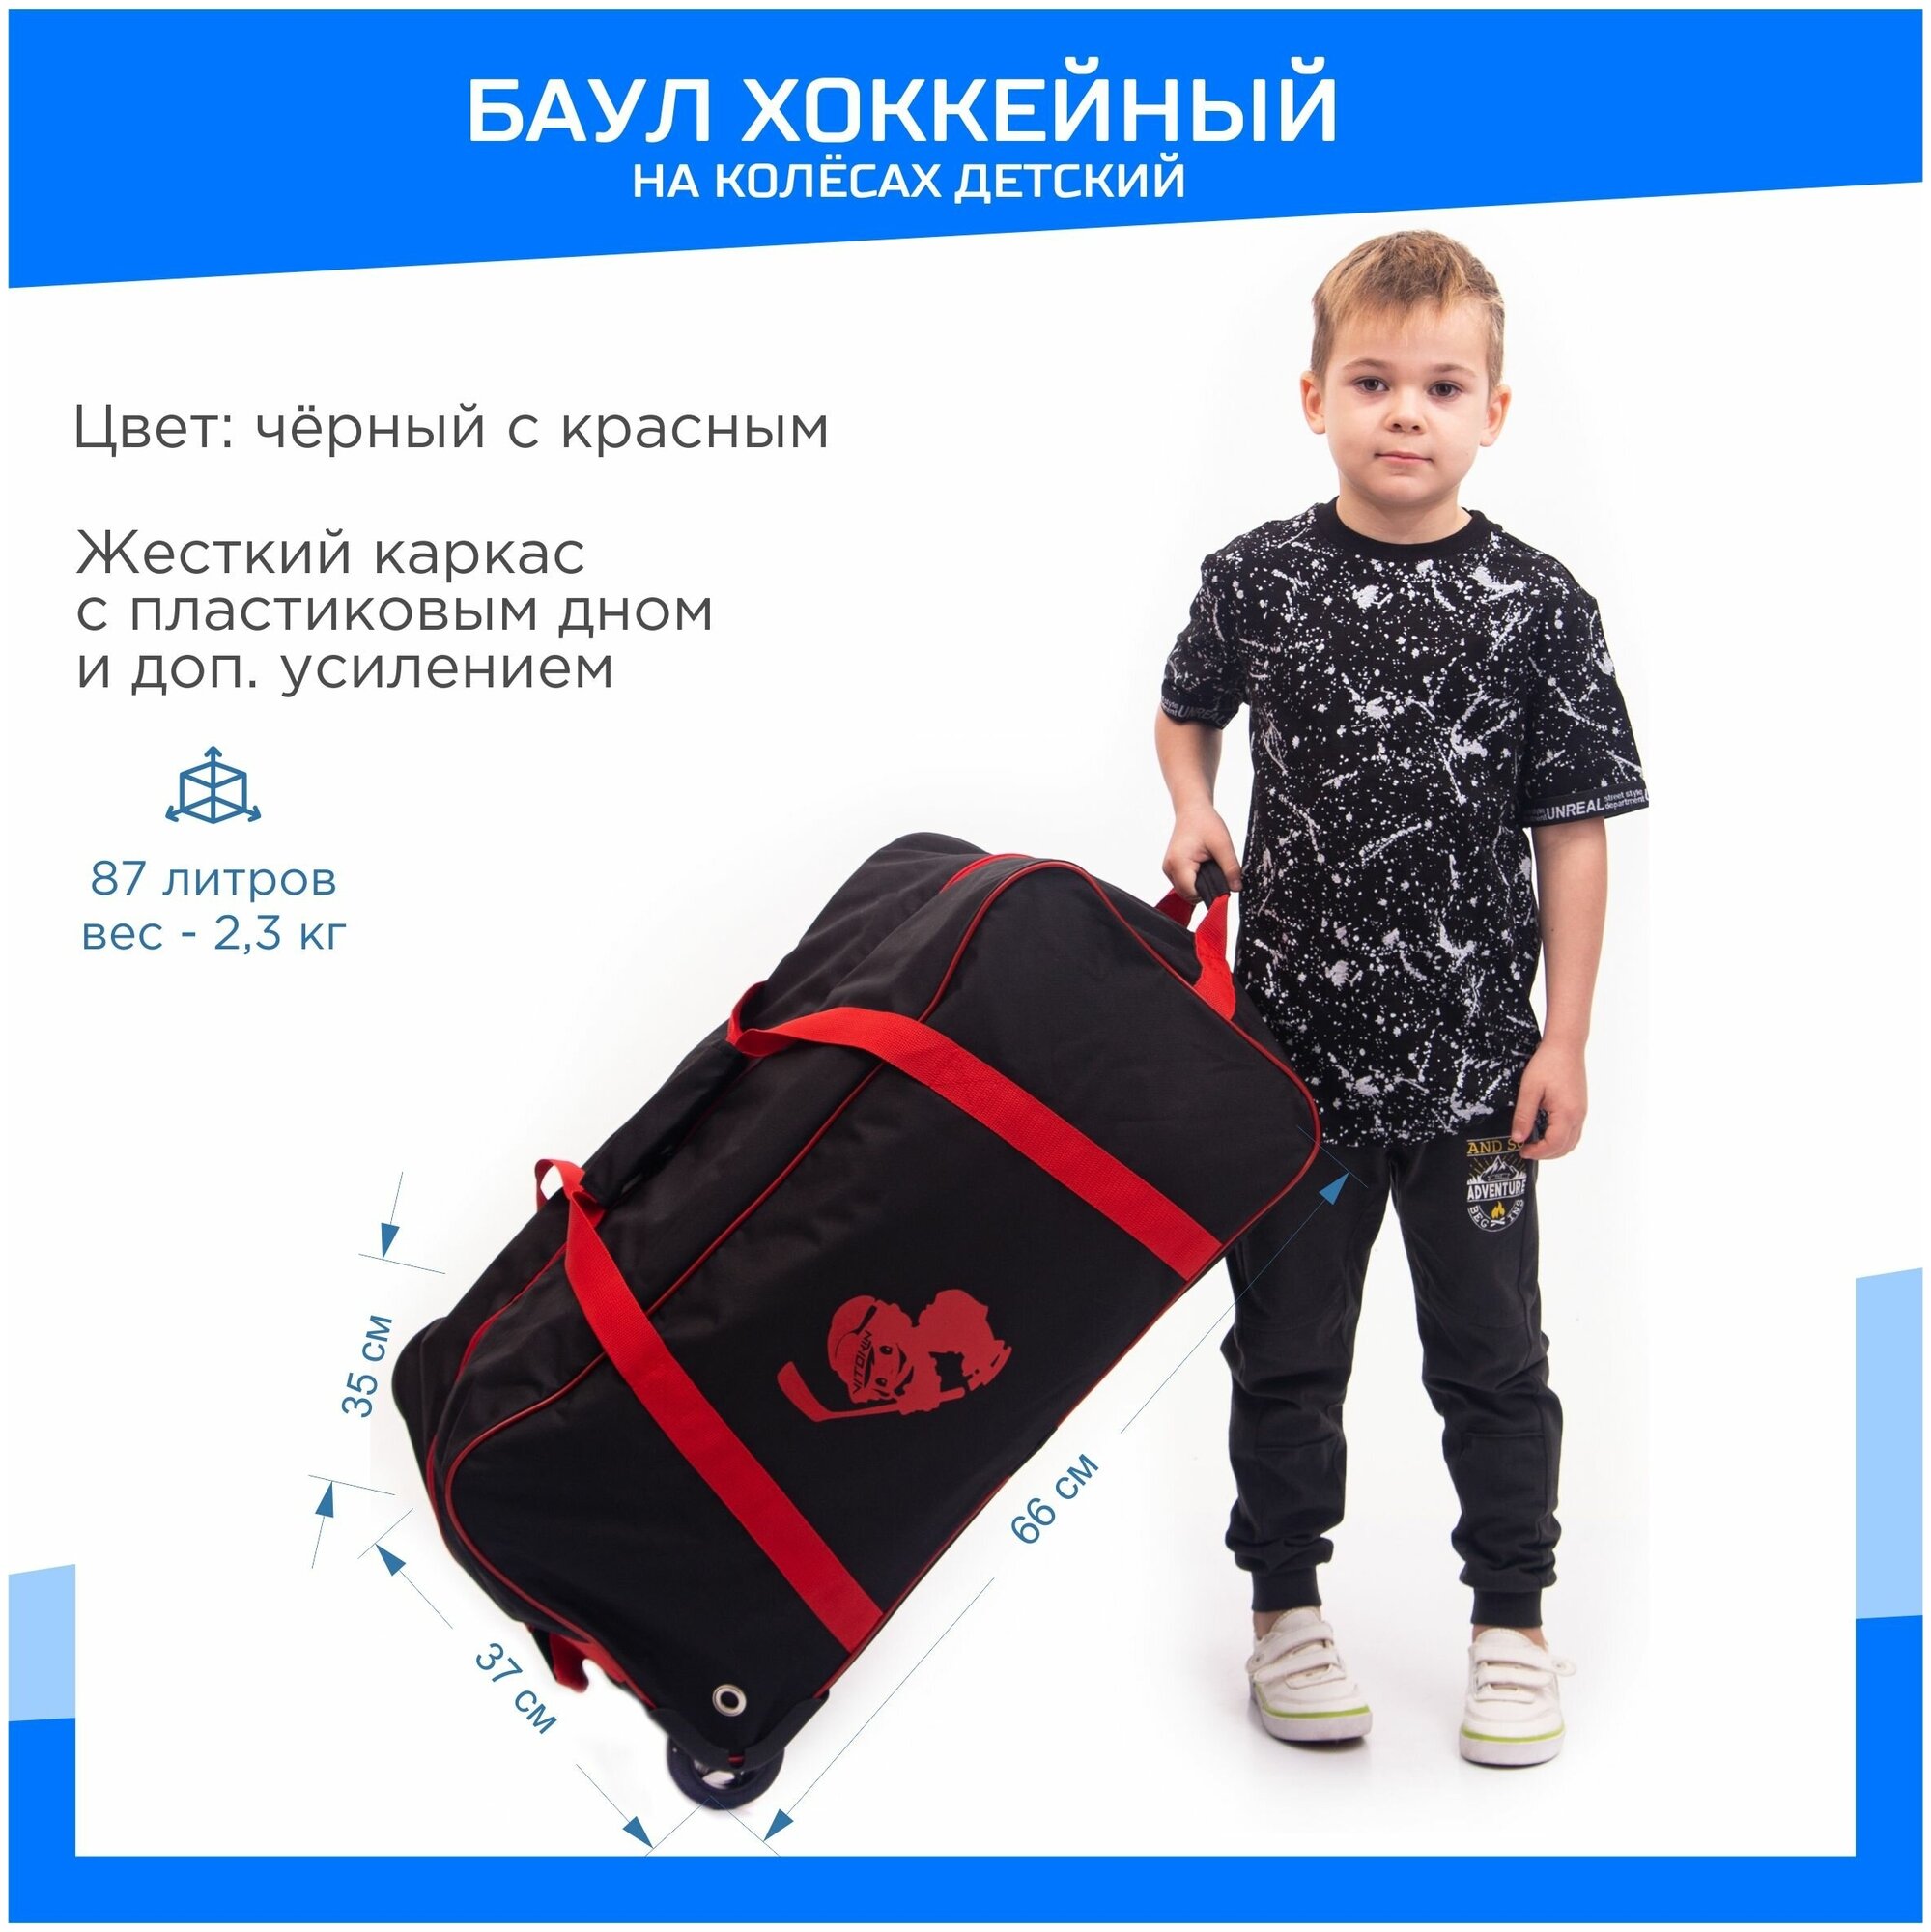 Баул детский хоккейный на колесах VITOKIN JUNIOR, сумка хоккейная на колесах, цвет черный с красным